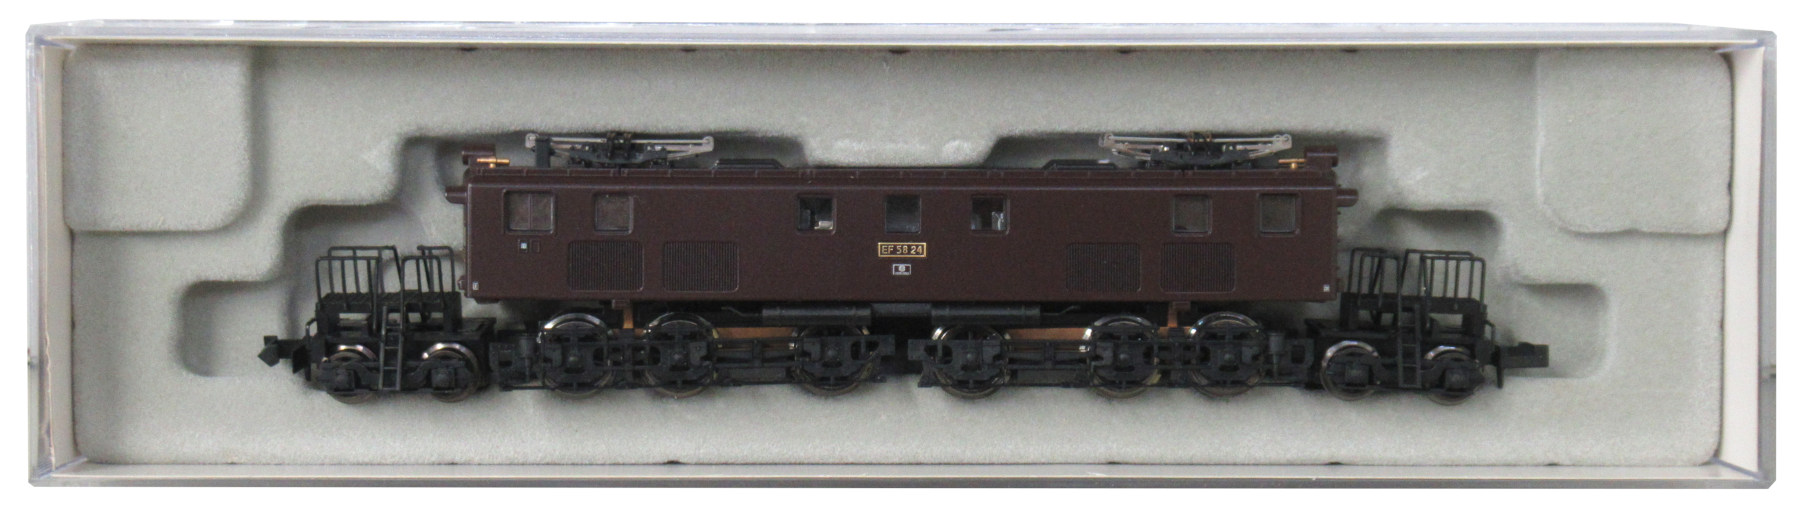 A1601 国鉄 EF58-24 旧型